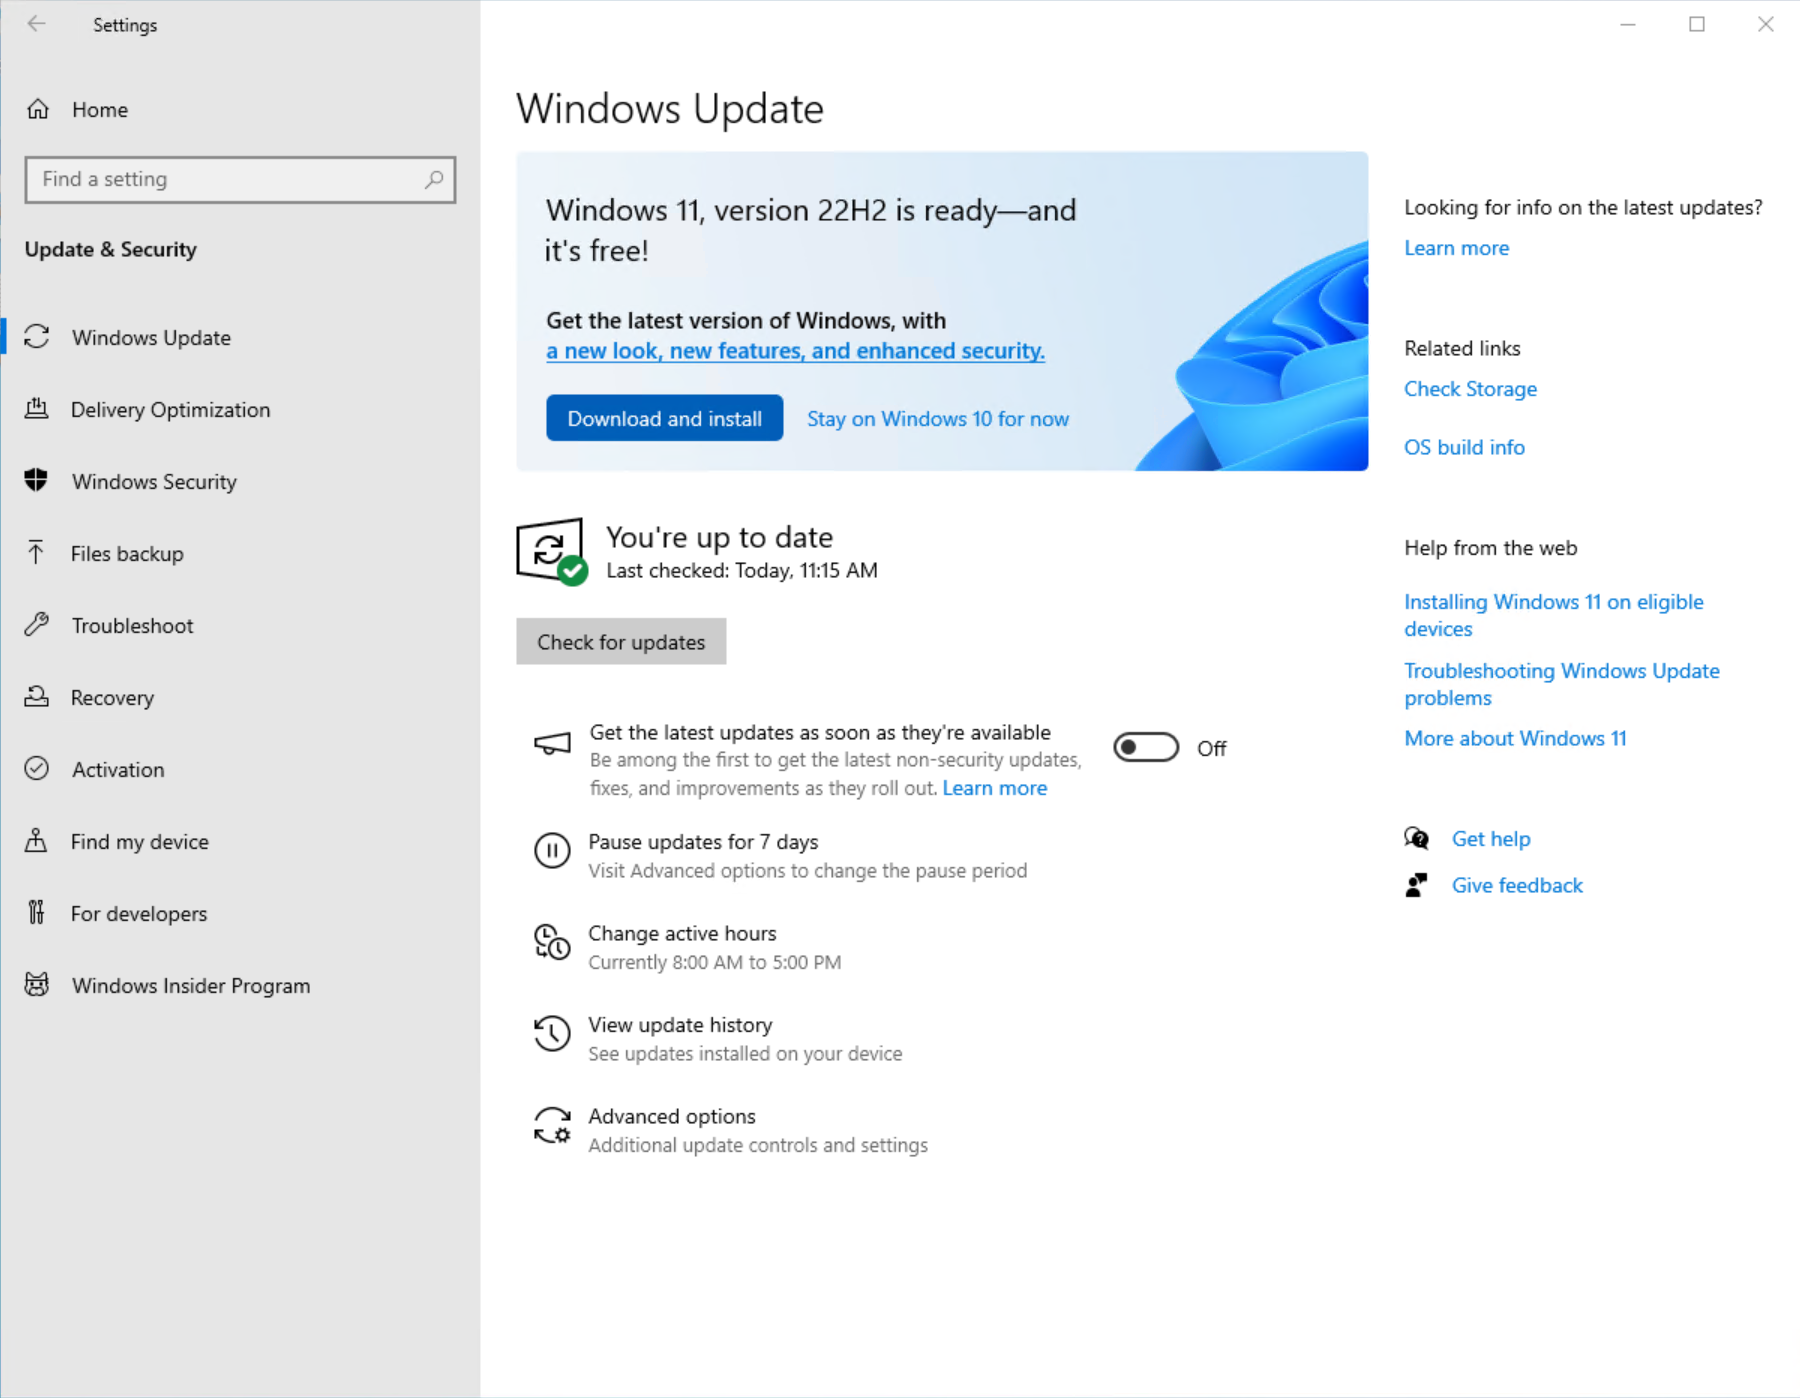 Captura de tela da página Windows Update em Configurações mostrando que Windows 11 está pronto para ser baixado e instalado.